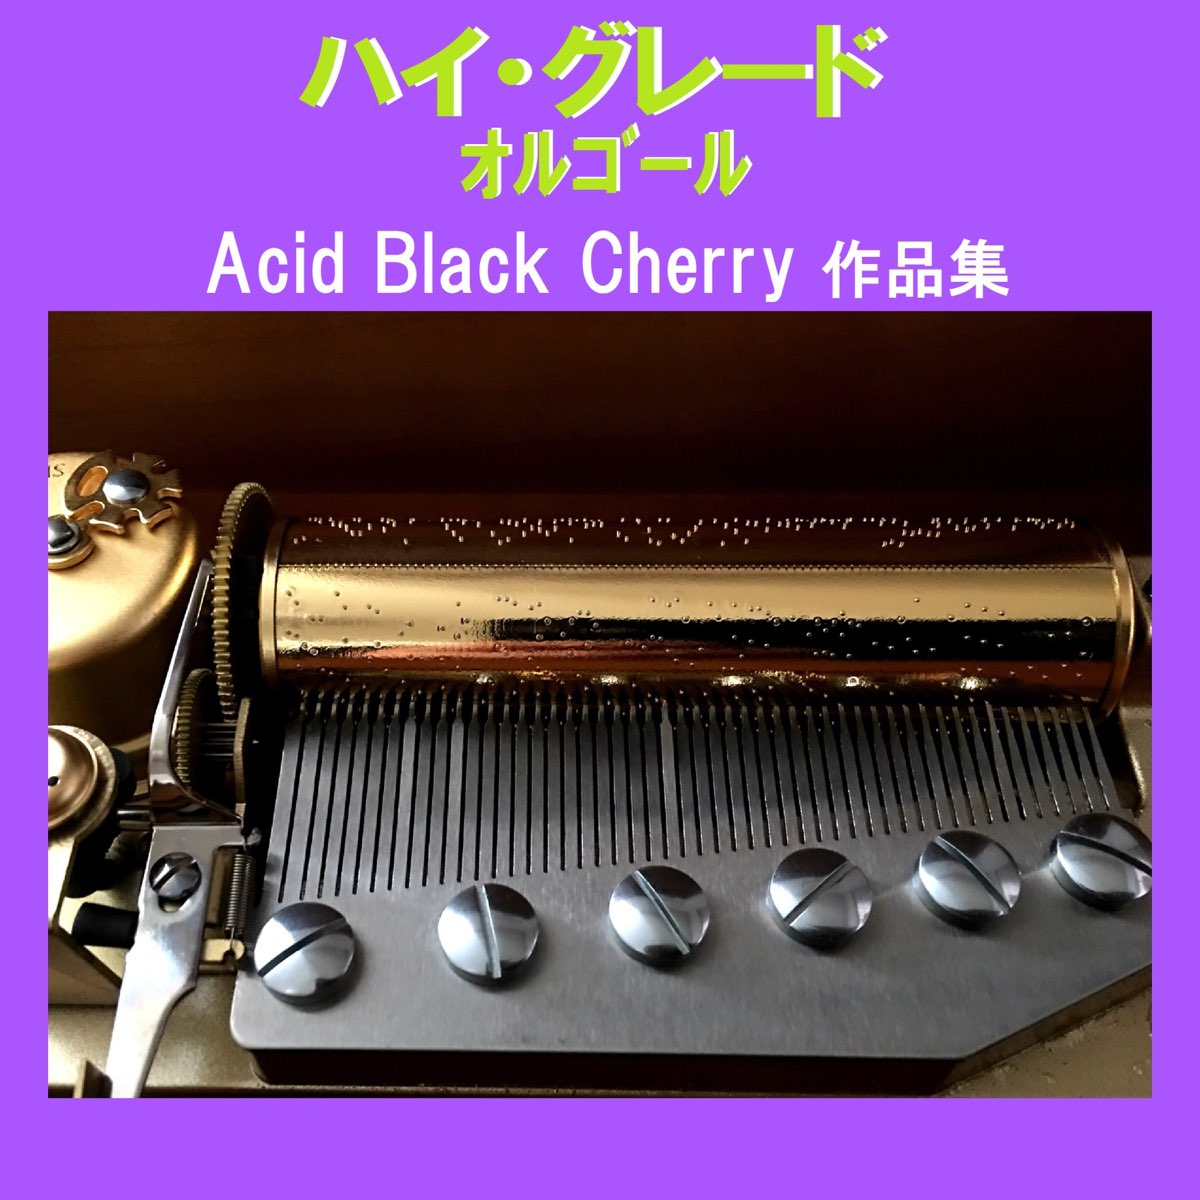 オルゴールサウンド J Popの ハイ グレード オルゴール作品集 Acid Black Cherry をapple Musicで